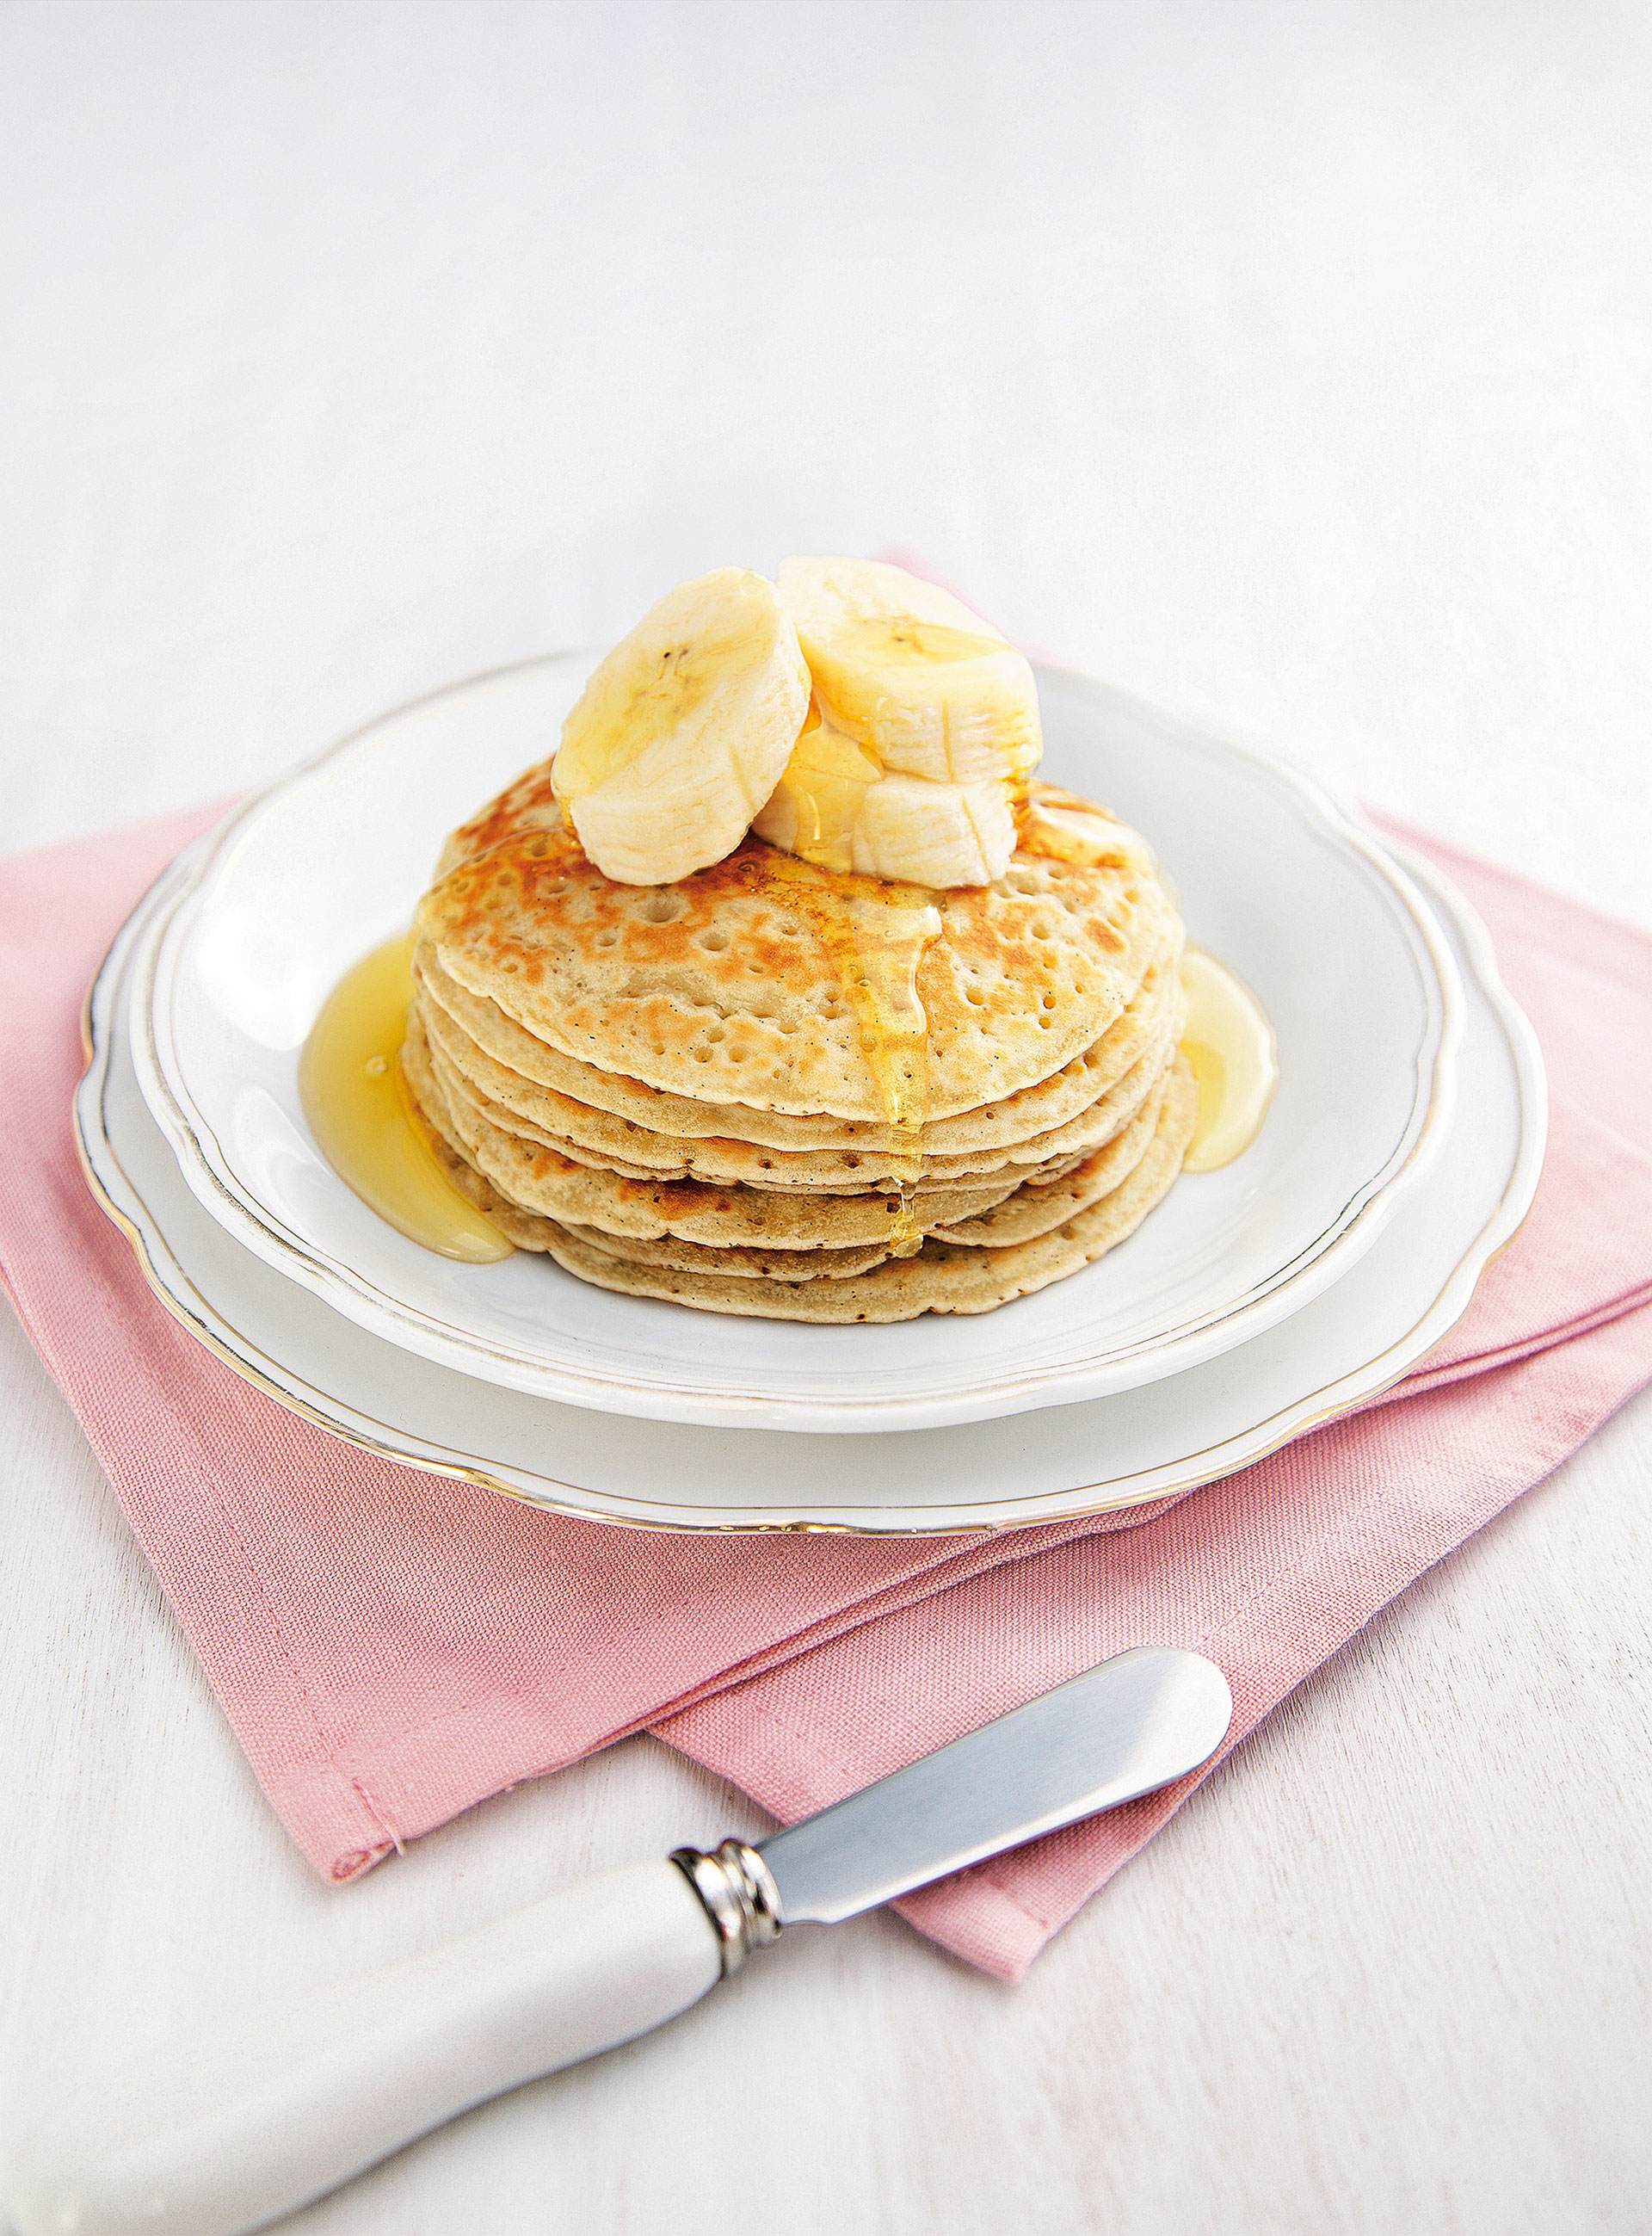 Gestapelte Pancakes mit Bananenscheiben und Ahornsirup